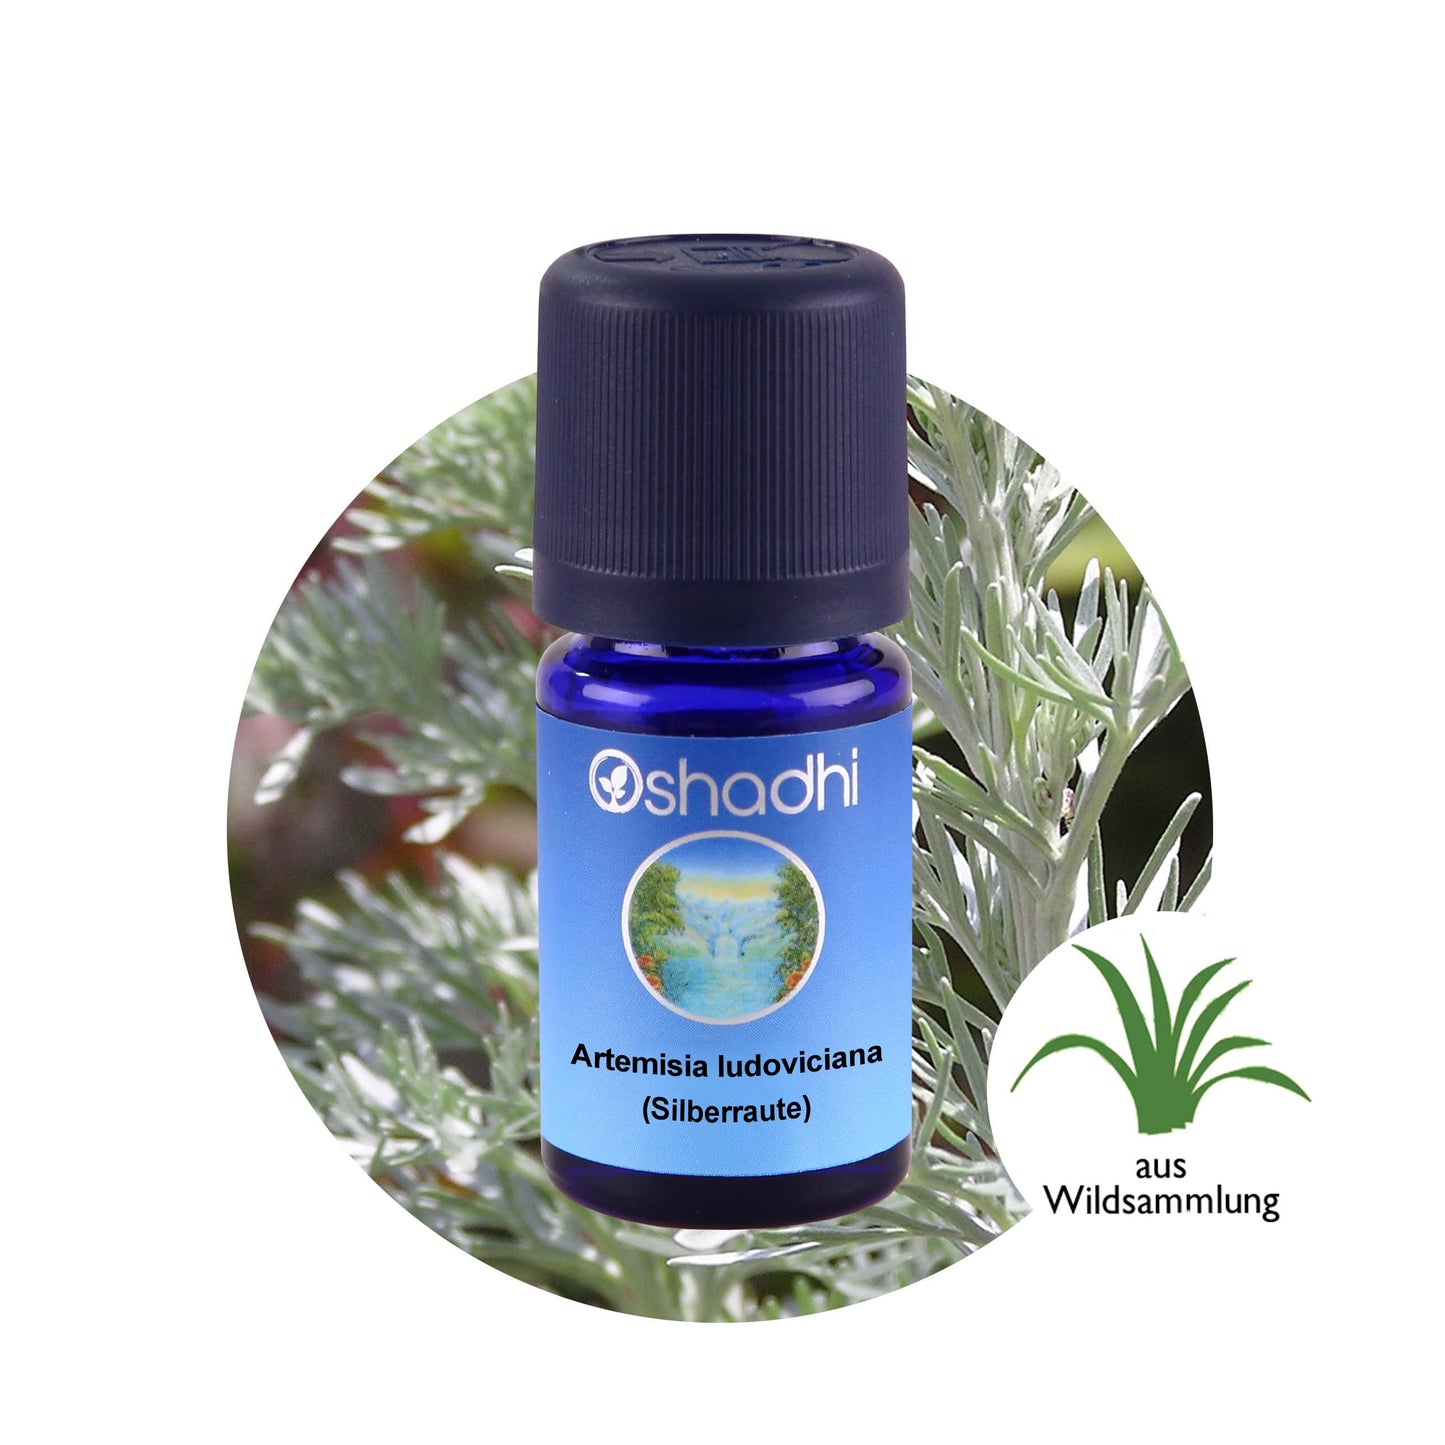 Artemisia ludoviciana (Silberraute) - Ätherisches Öl